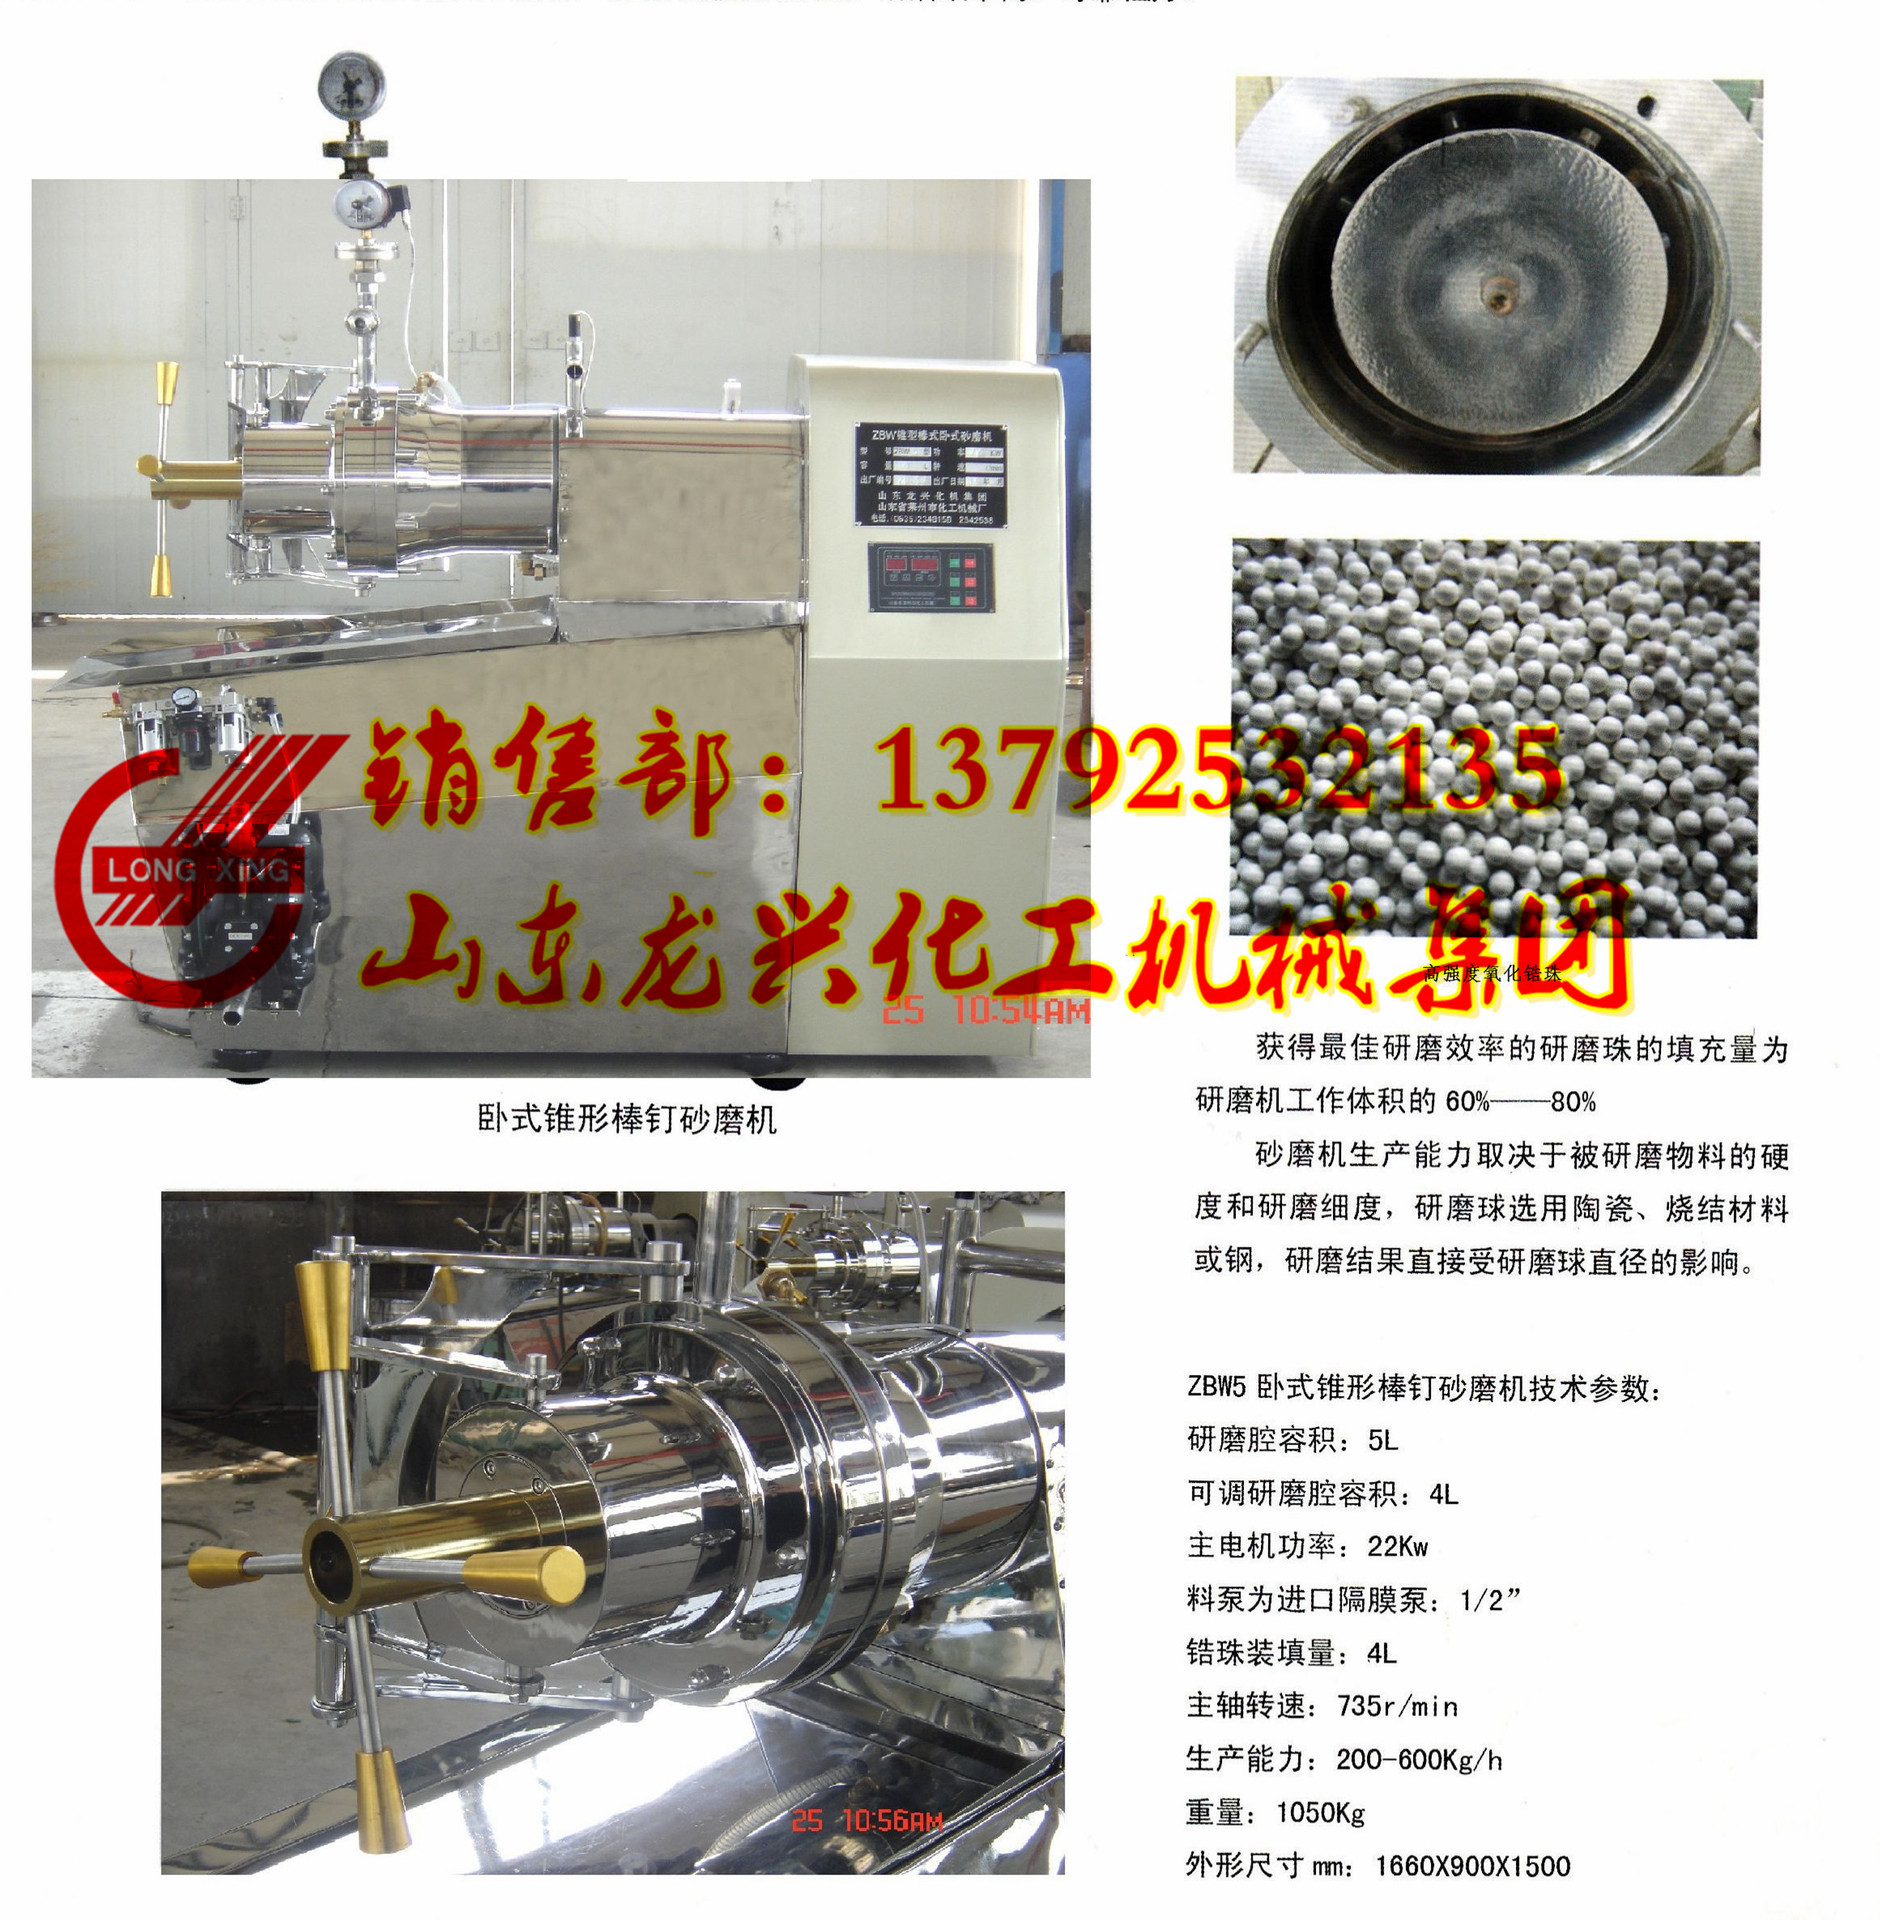 5l进口纳米砂磨机厂家|负极材料5l纳米砂磨机型号|正极材料研磨机示例图4